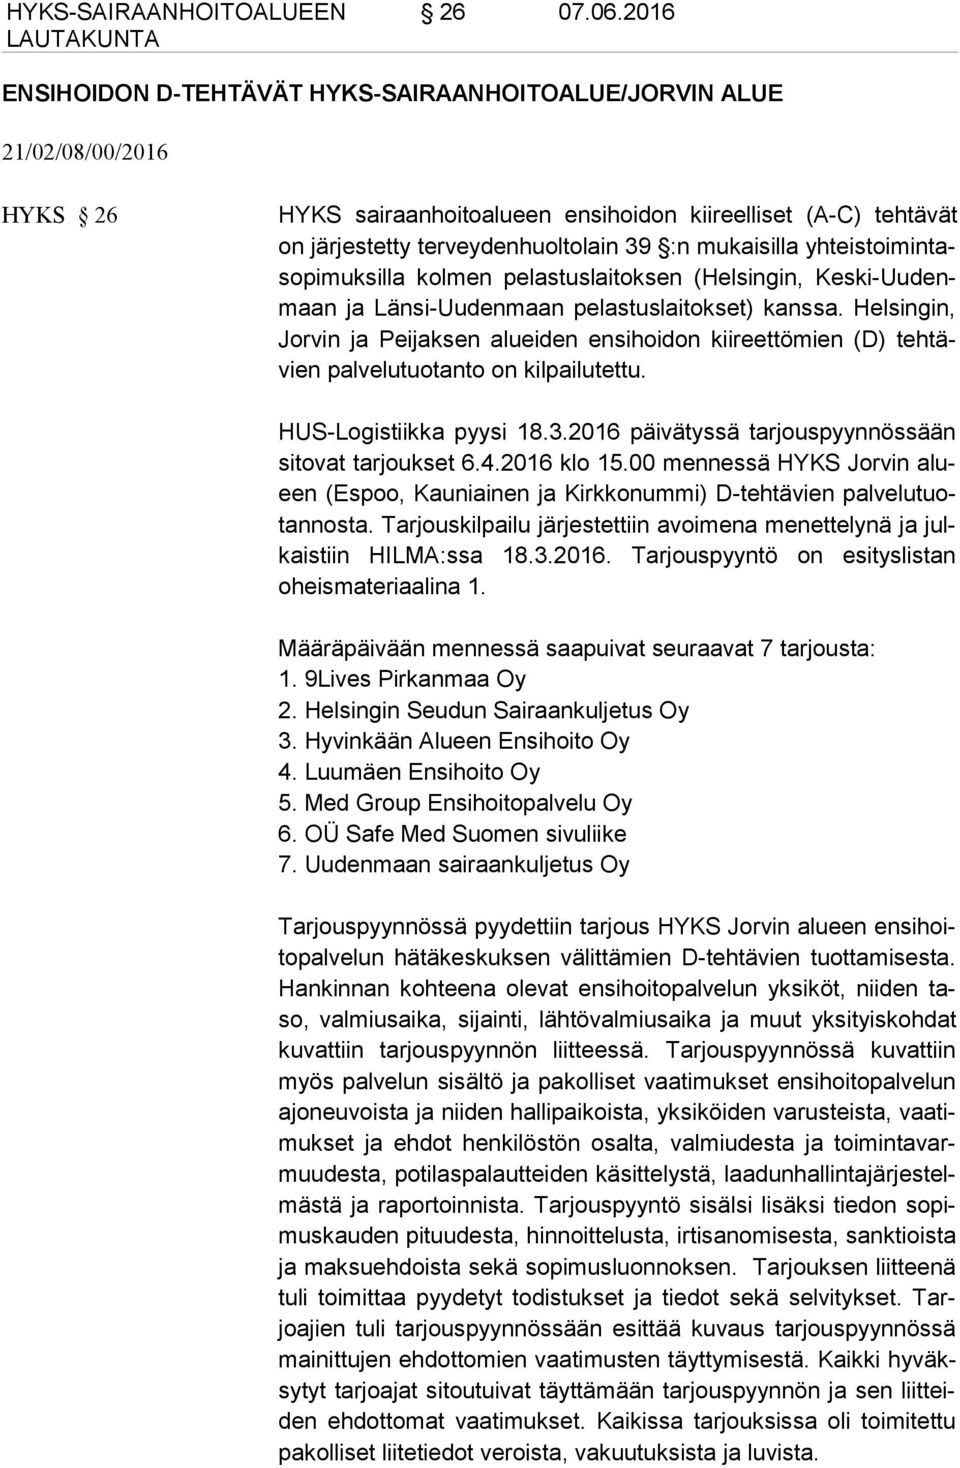 mukaisilla yhteistoimintasopimuksilla kolmen pelastuslaitoksen (Helsingin, Keski-Uudenmaan ja Länsi-Uudenmaan pelastuslaitokset) kanssa.